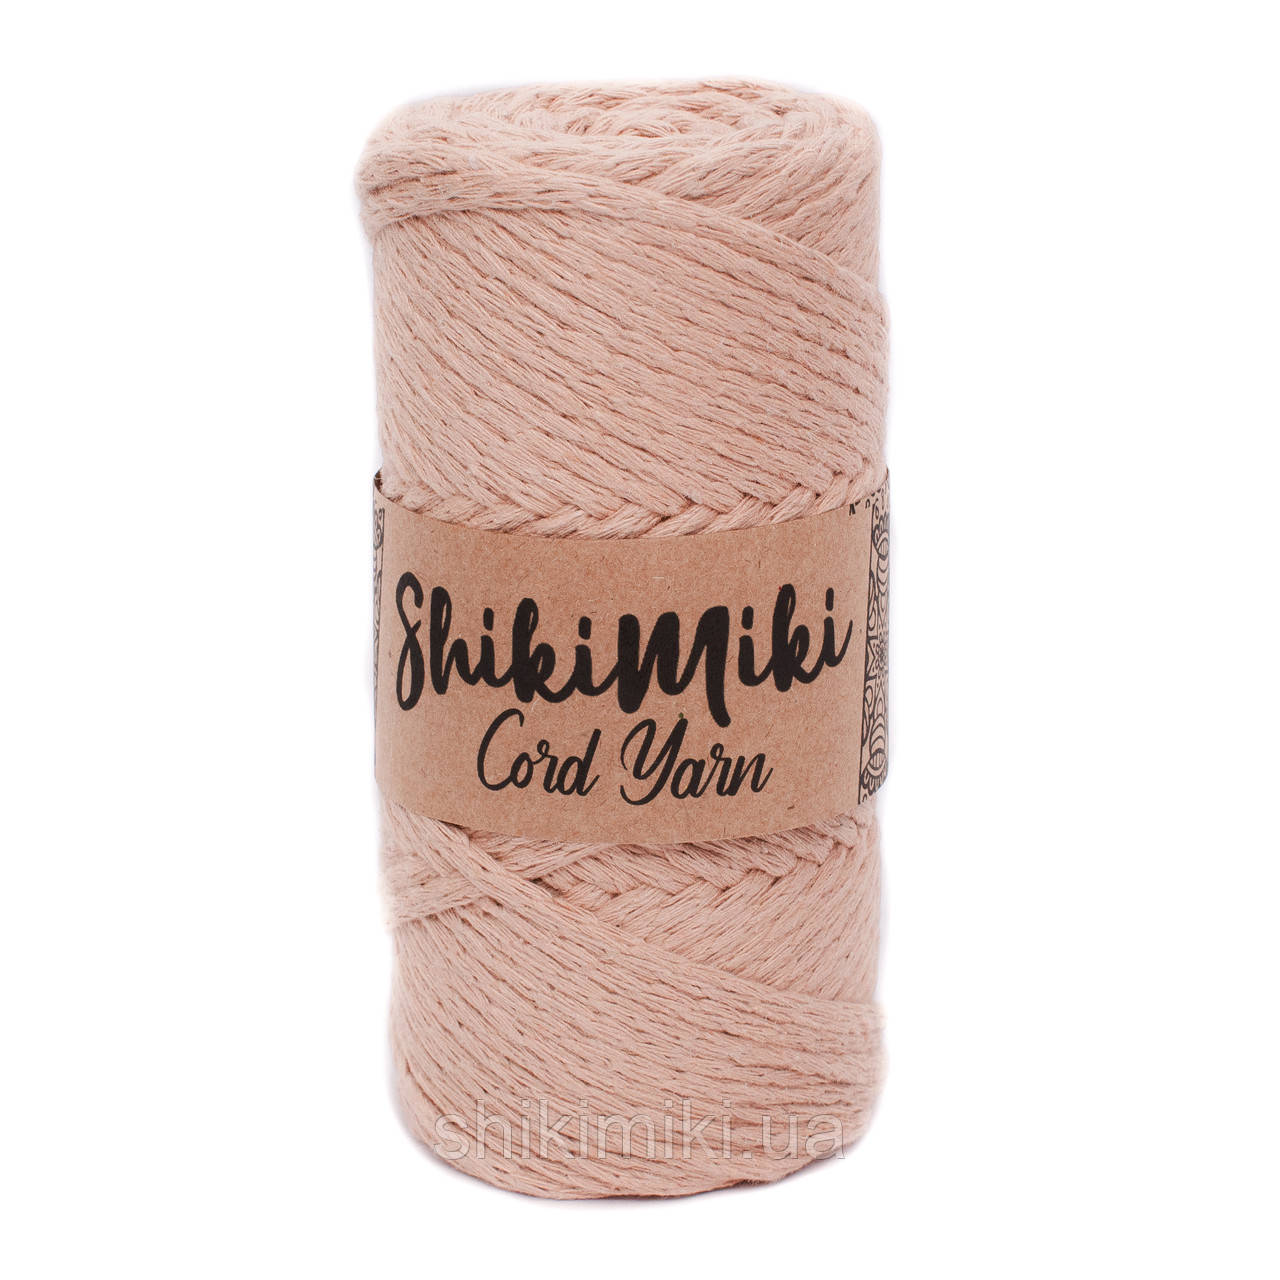 Эко шнур Shikimiki Cord Yarn 4 mm, цвет Шамуа